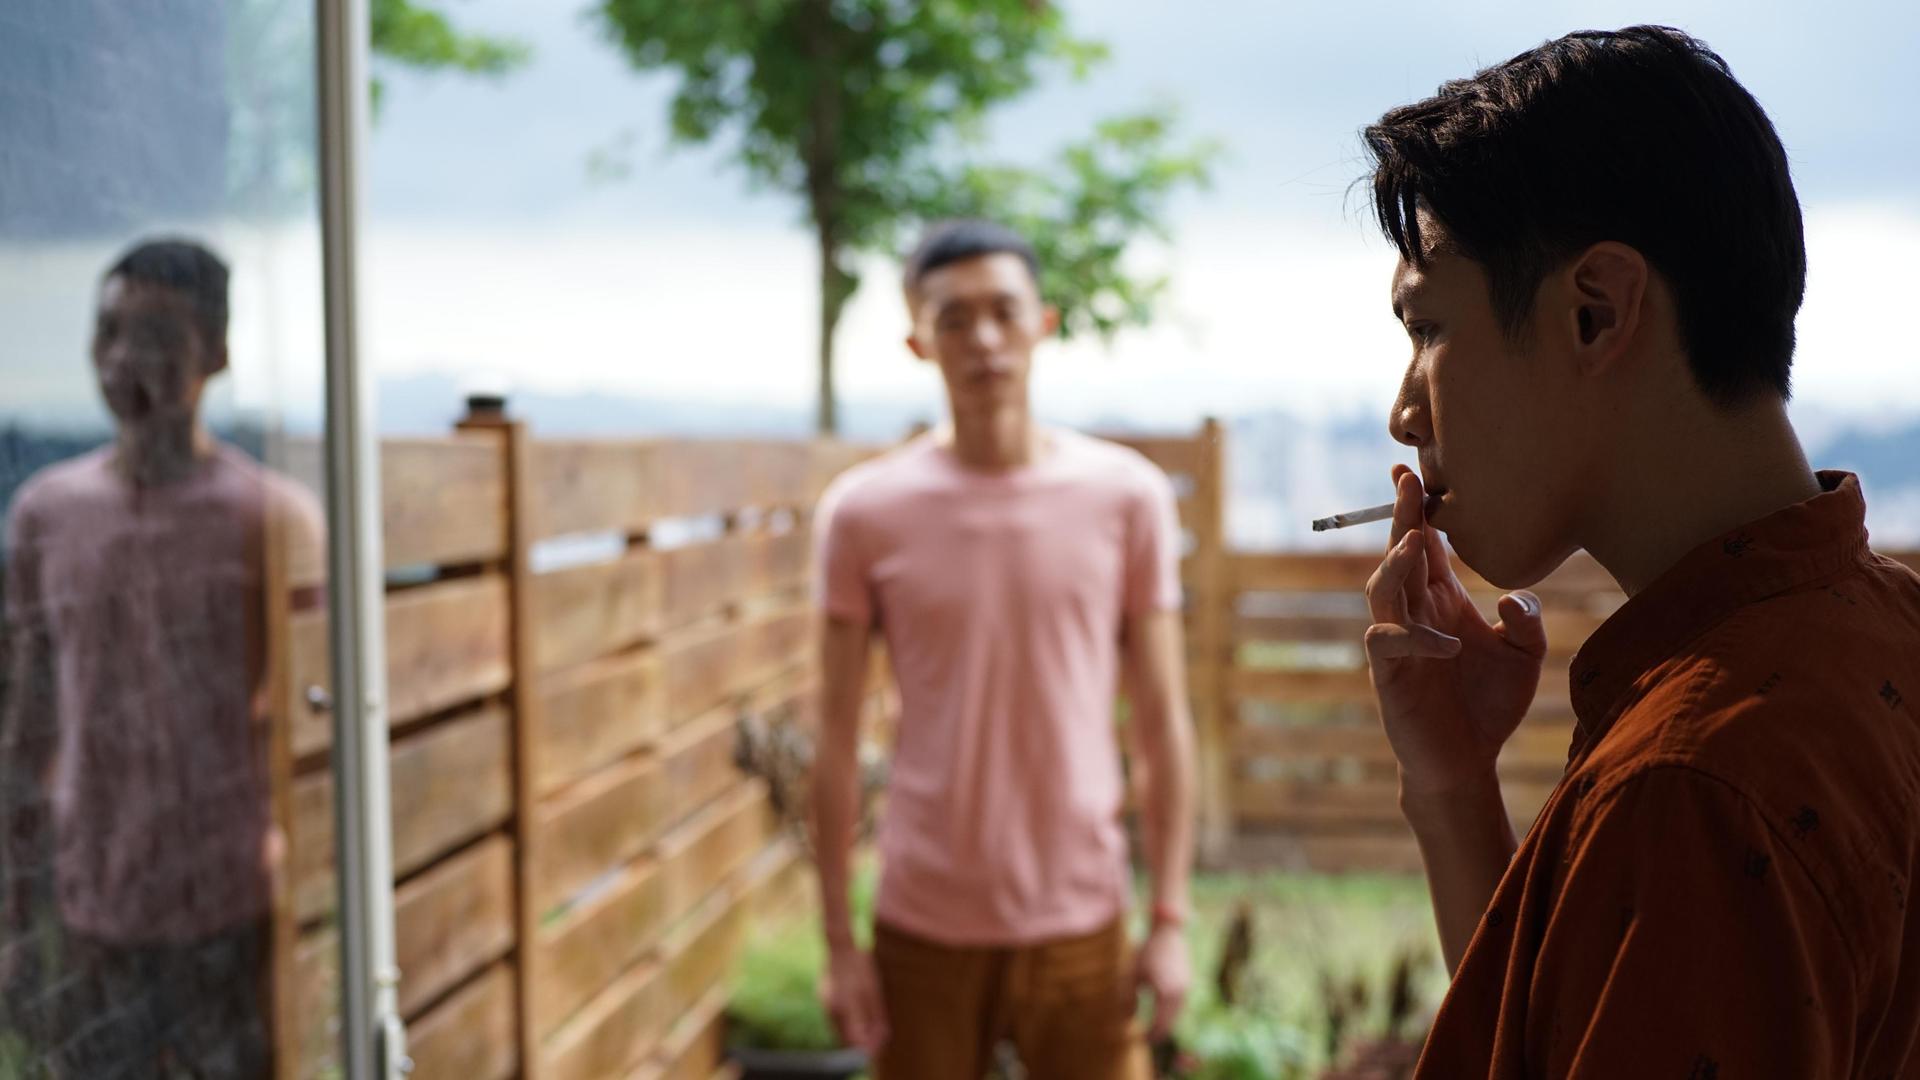 Ein Mann lehnt an einem Türrahmen und zieht cool an einer Zigarette. Im Garten dahinter steht ein weiterer Mann im Unschärfebereich des Bildes und schaut den rauchenden Mann an.